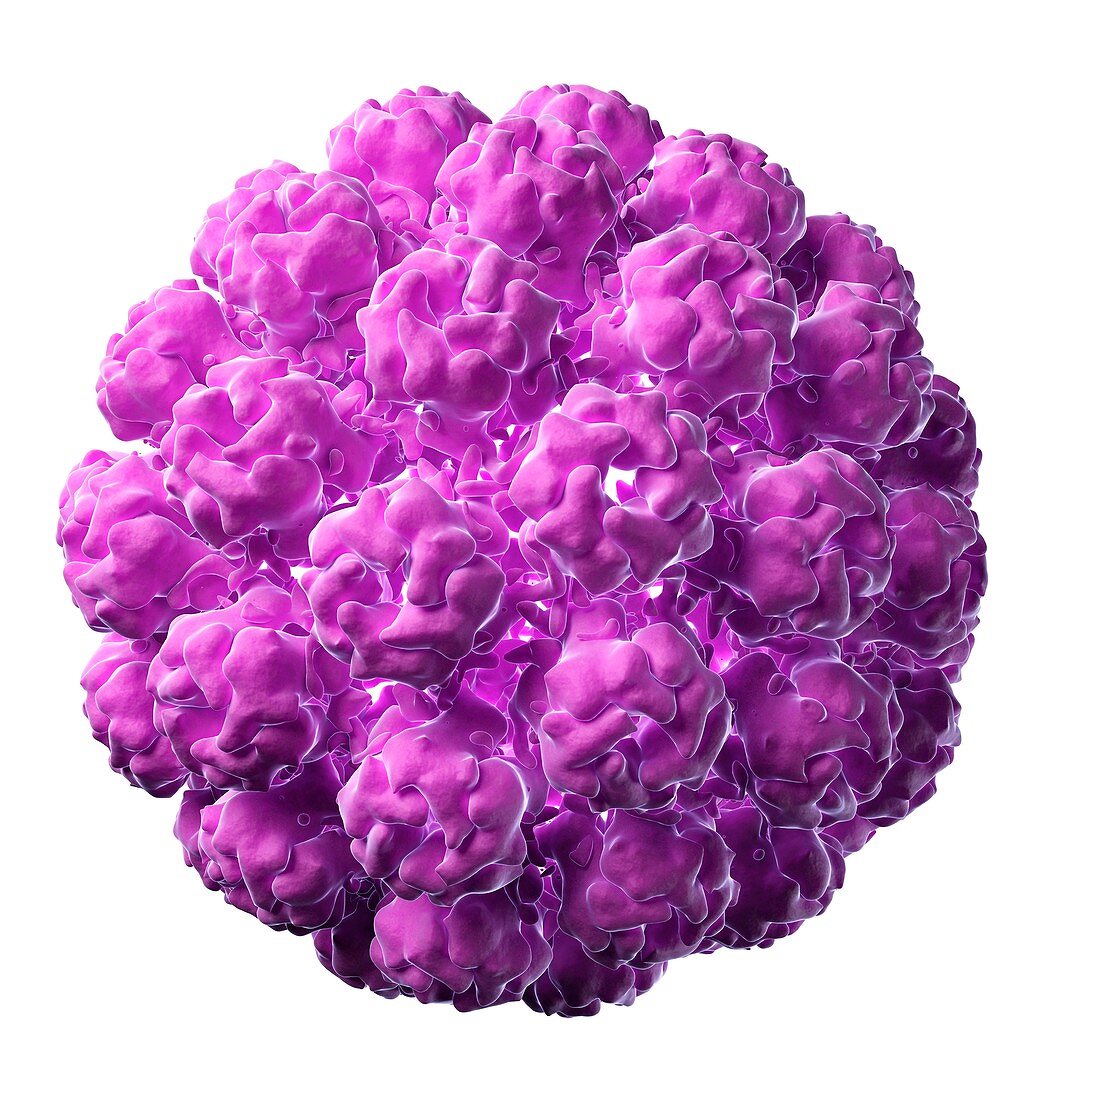 Murine polyomavirus,artwork